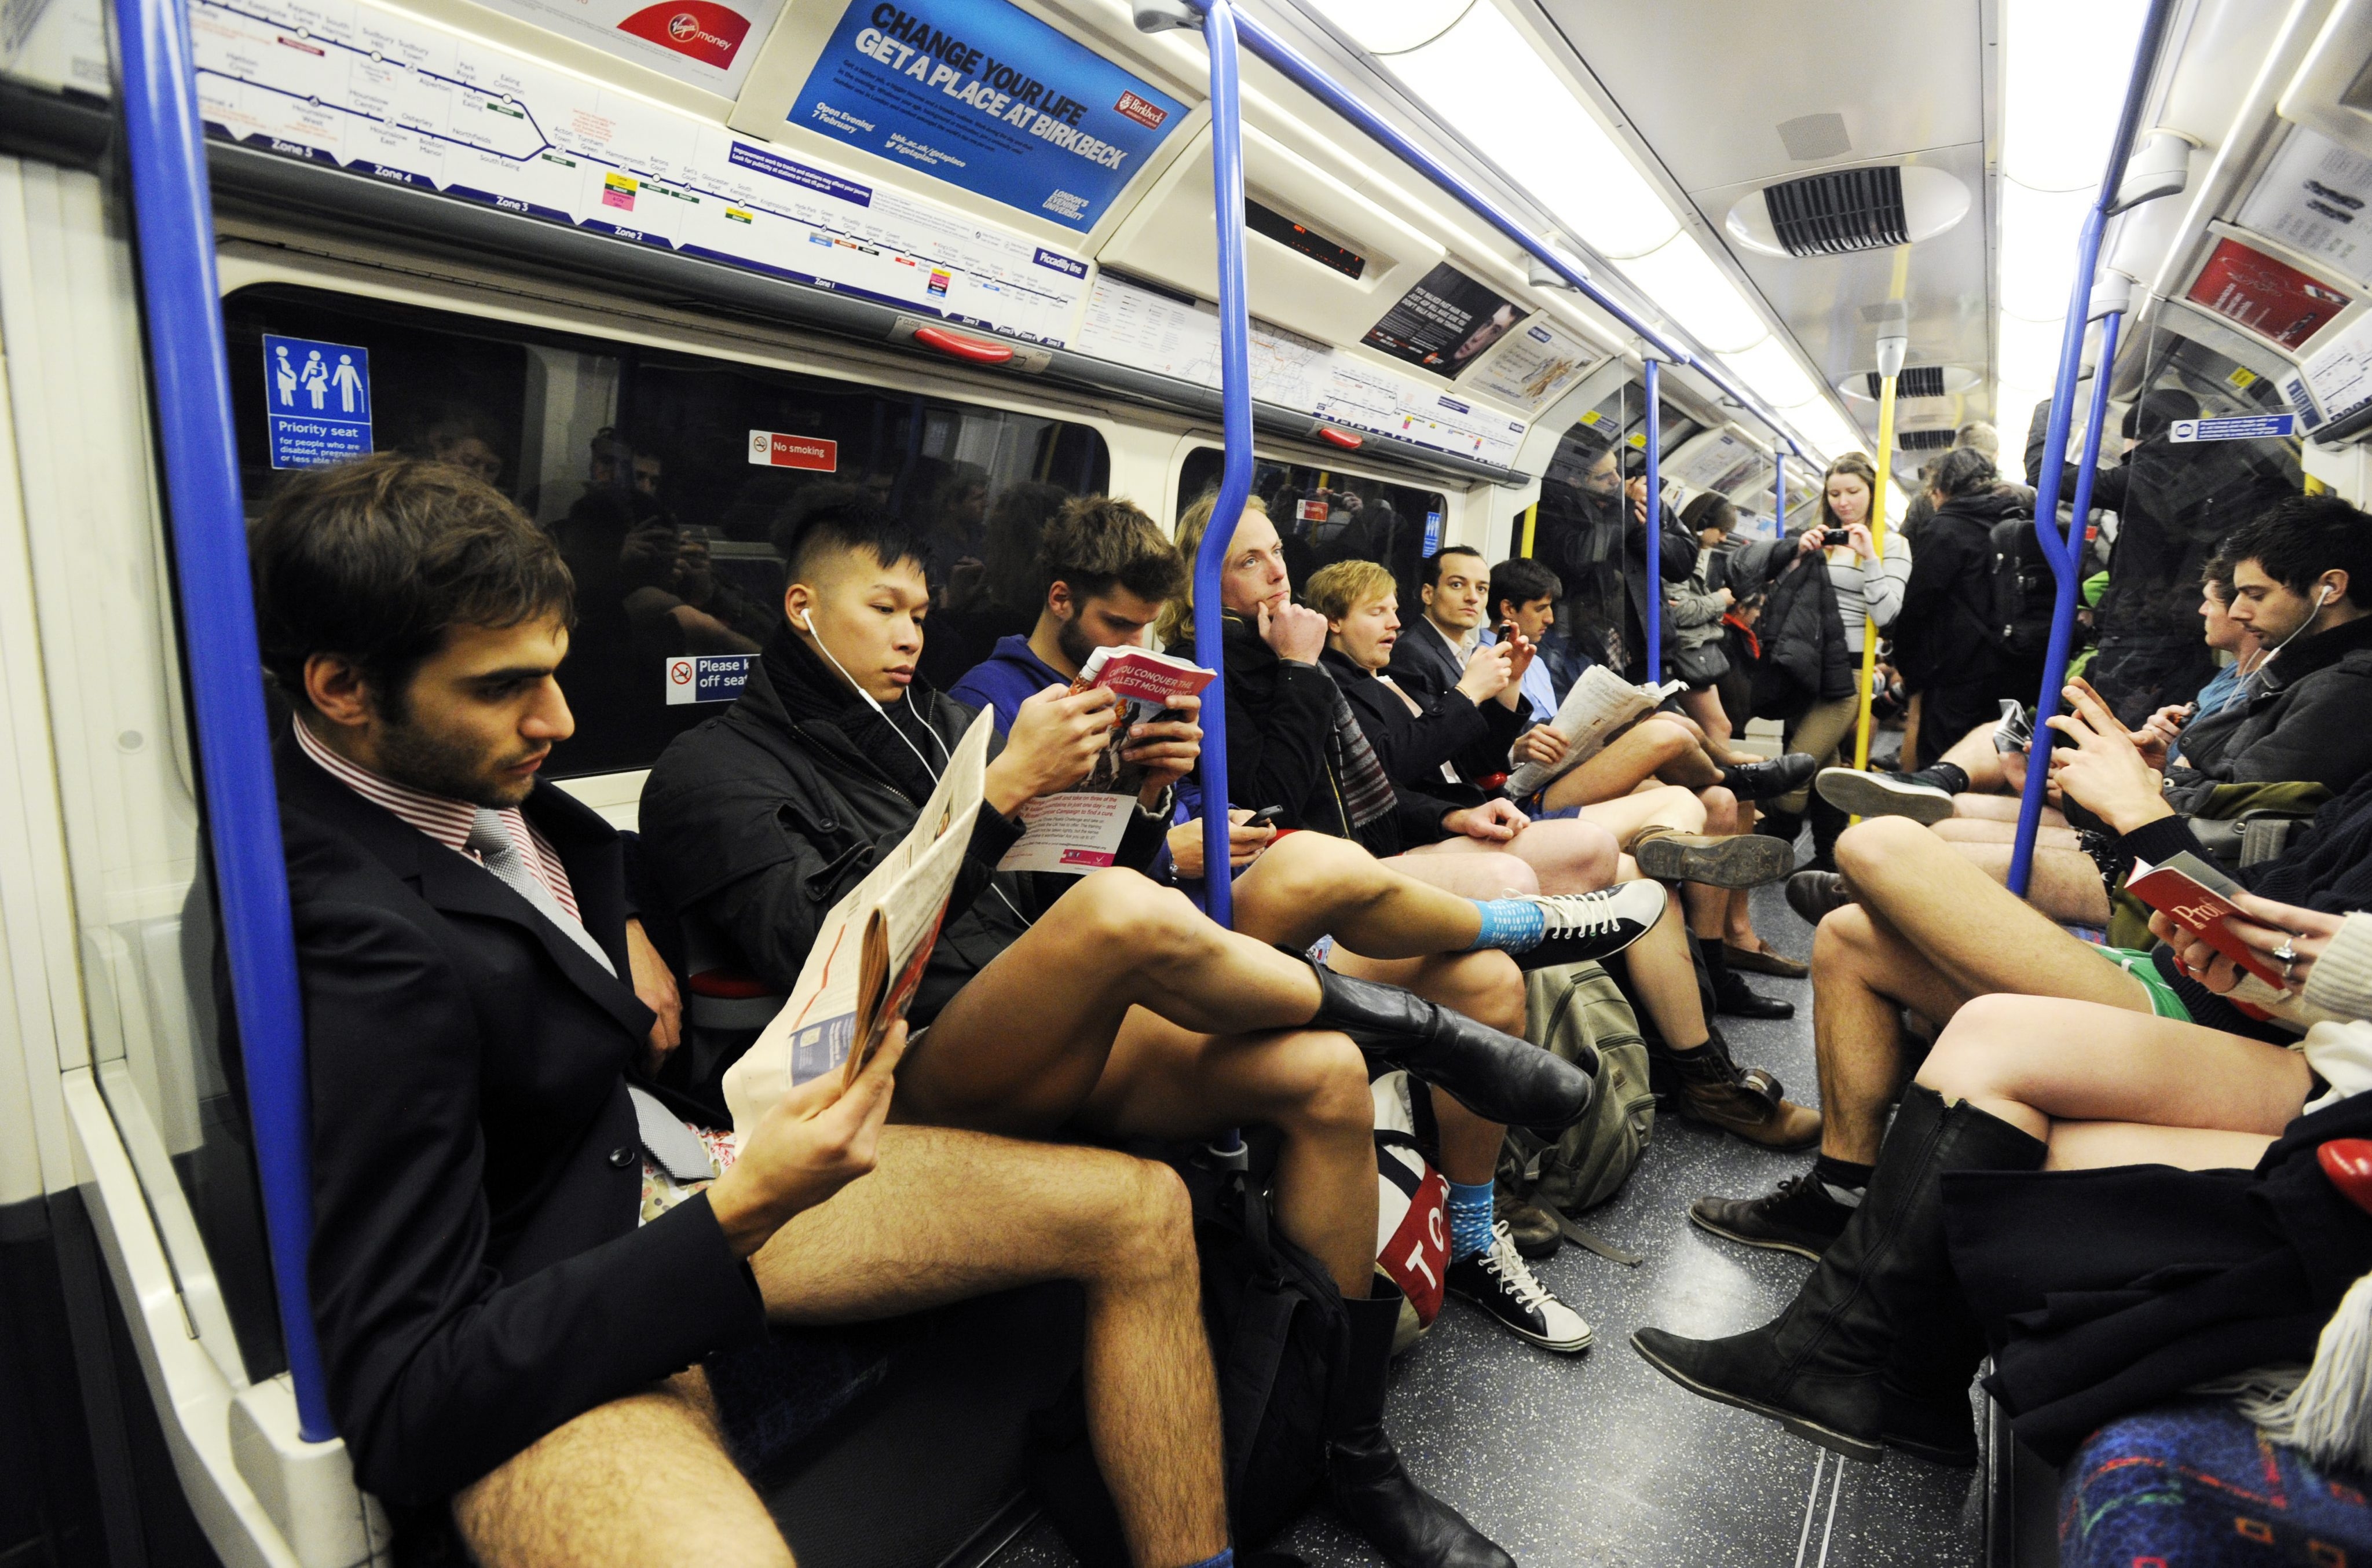 голые мужчины в метро фото 31